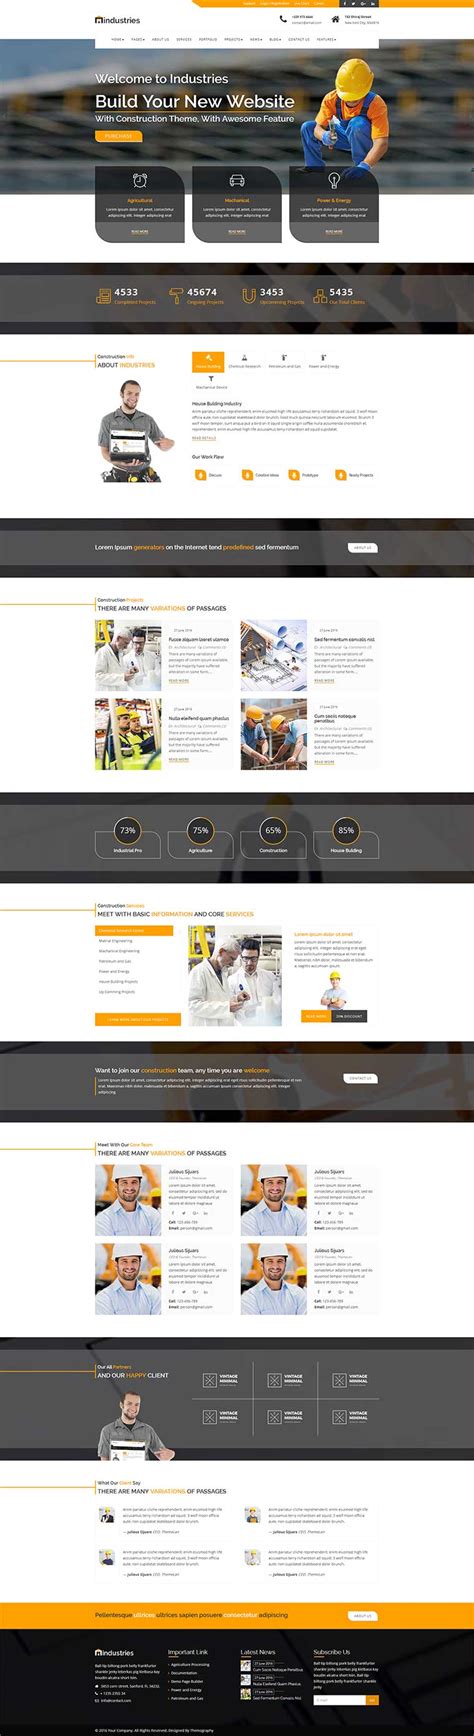 橙色大气html5响应式工业建筑公司网站模板 - 素材火